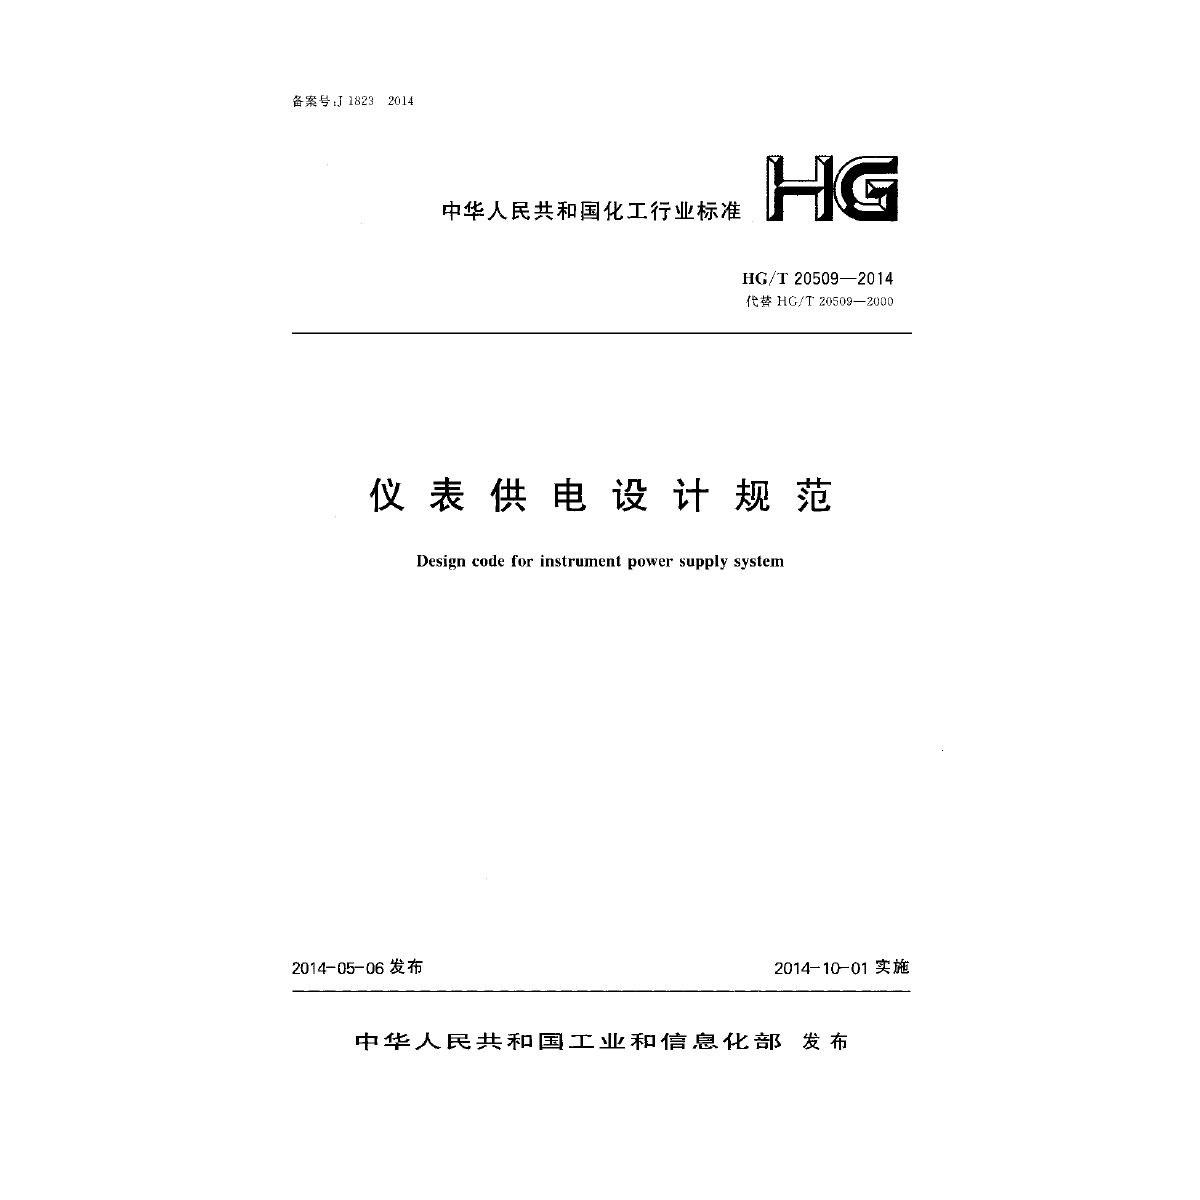 仪表供电设计规范（HG/T 20509-2014）